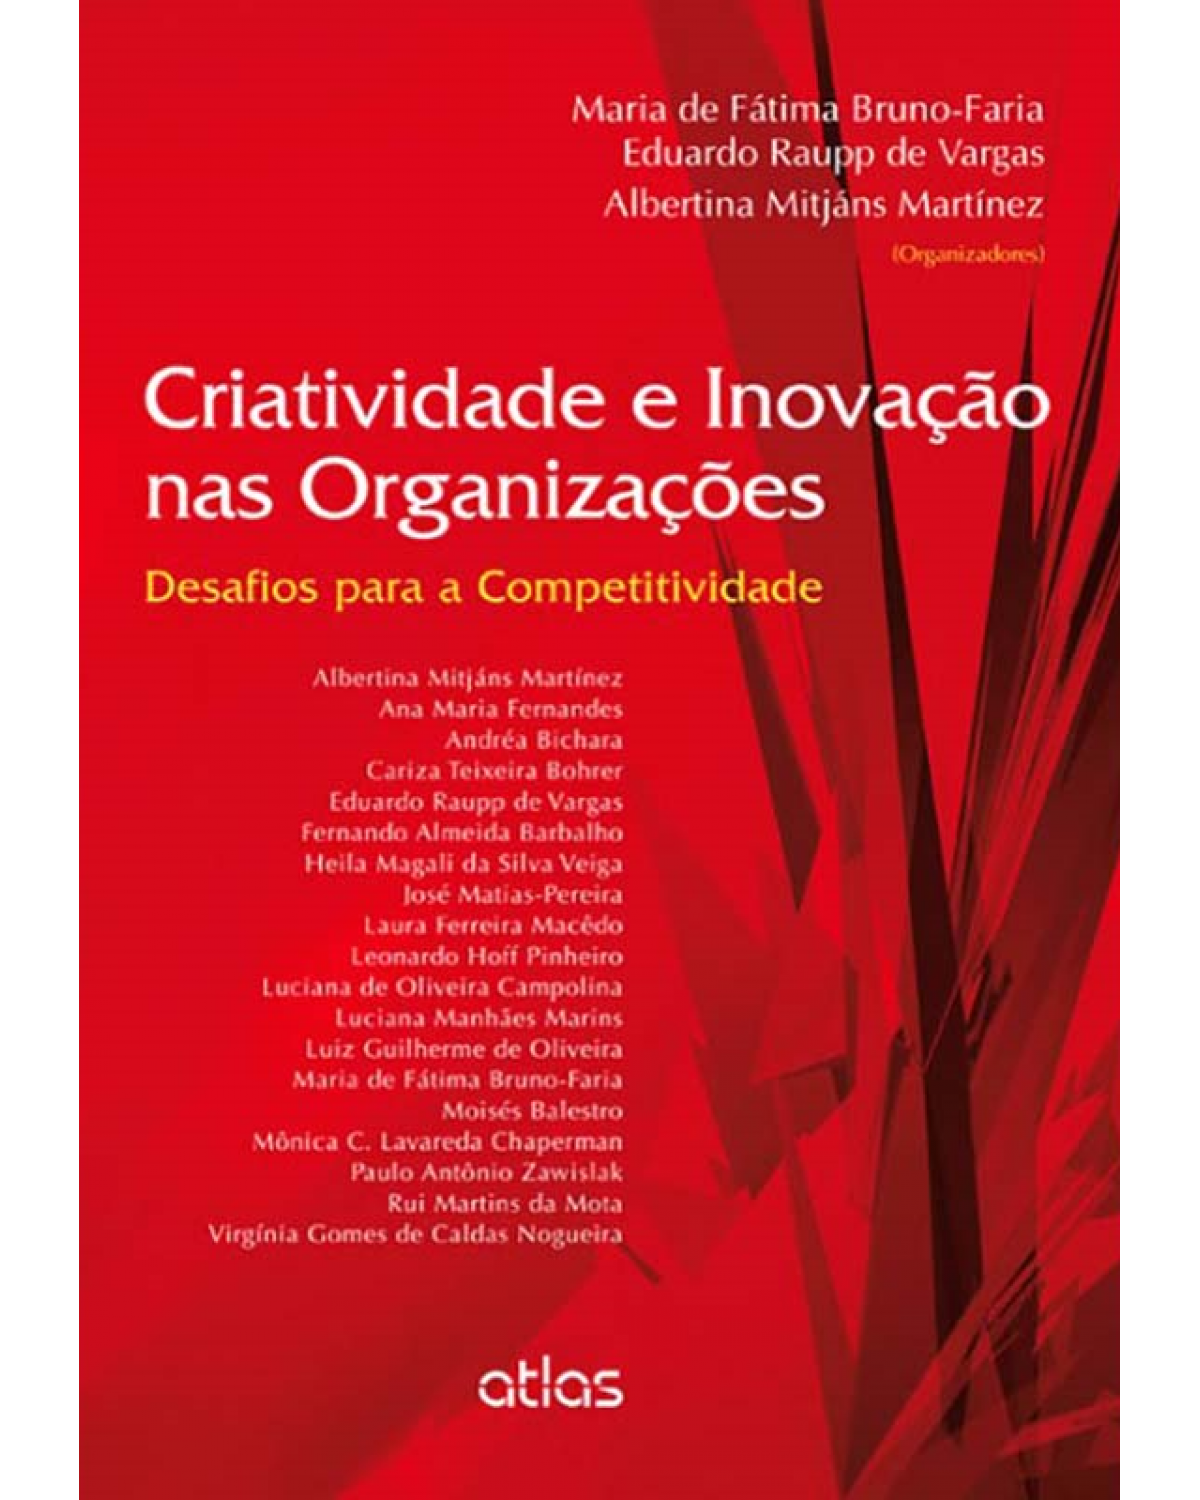 Criatividade e inovação nas organizações - Desafios para a competitividade - 1ª Edição | 2013